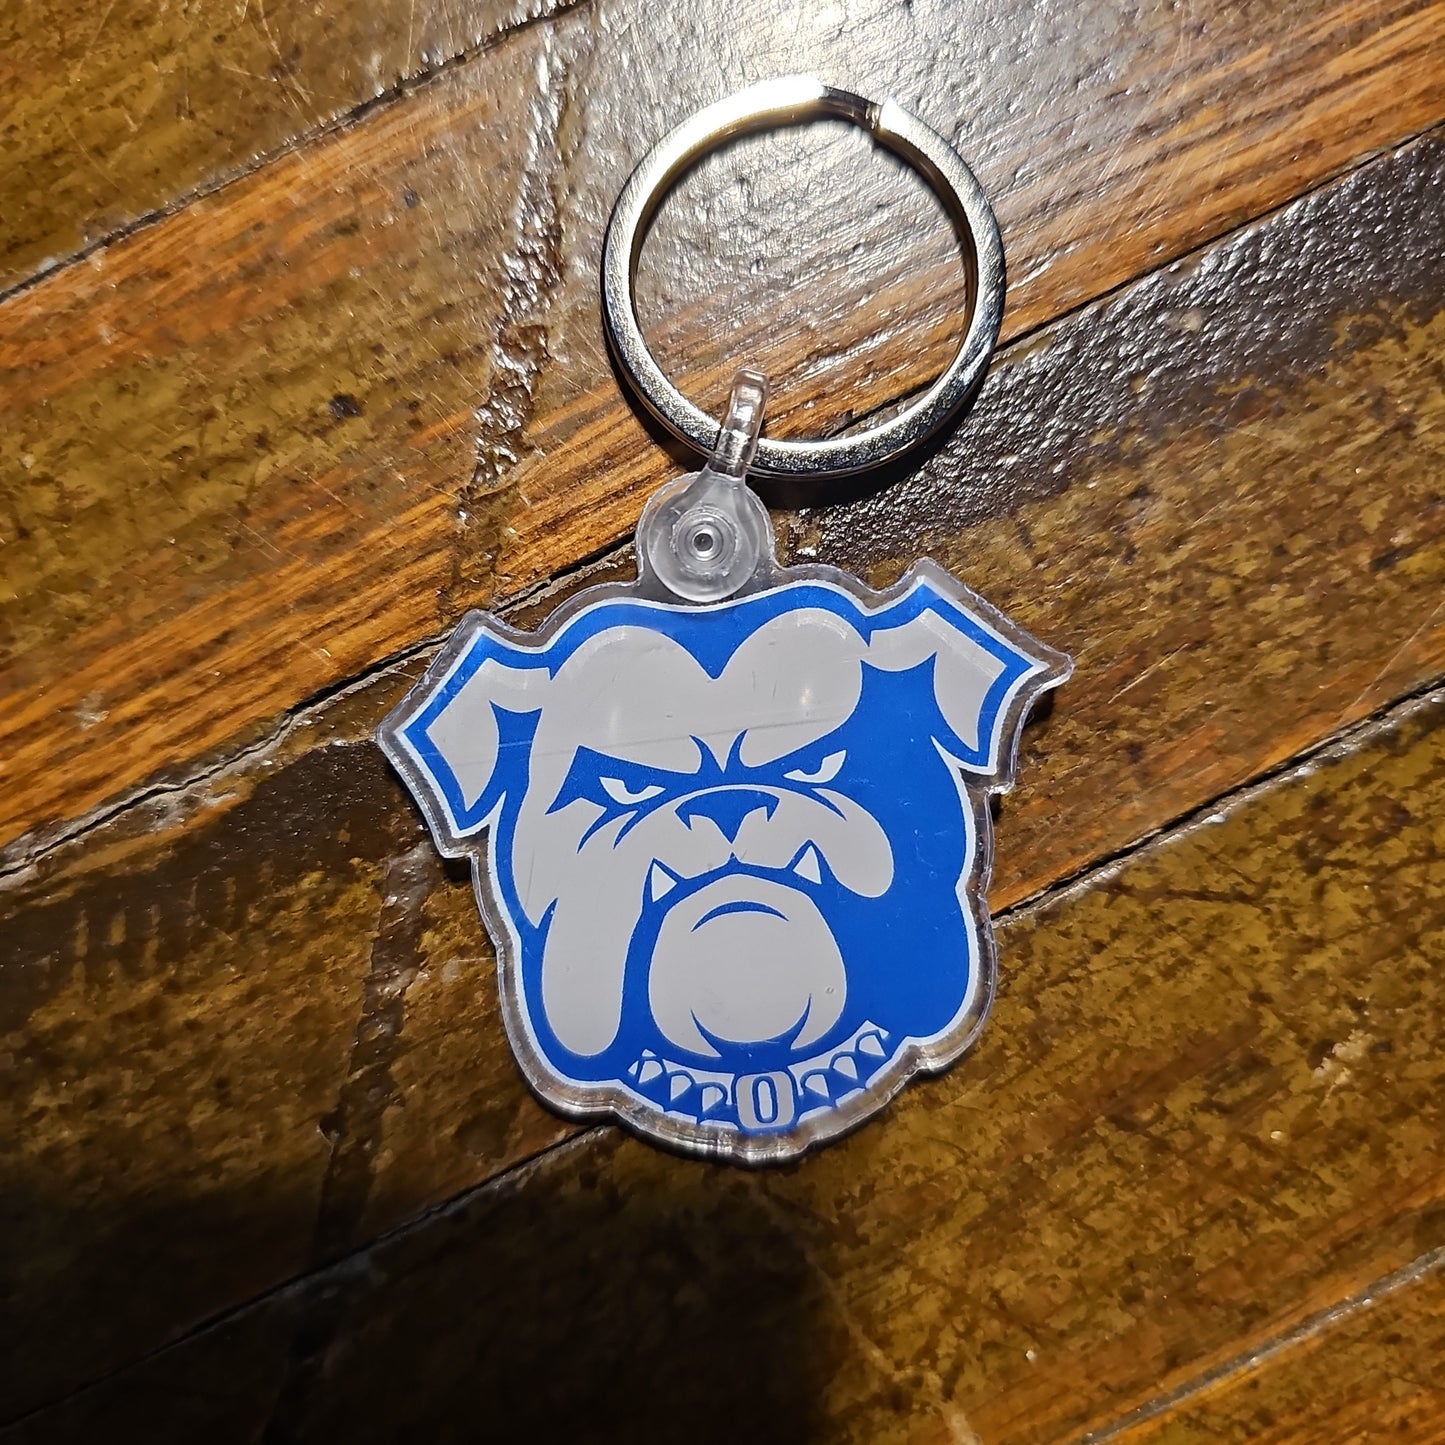 Bulldog key chain